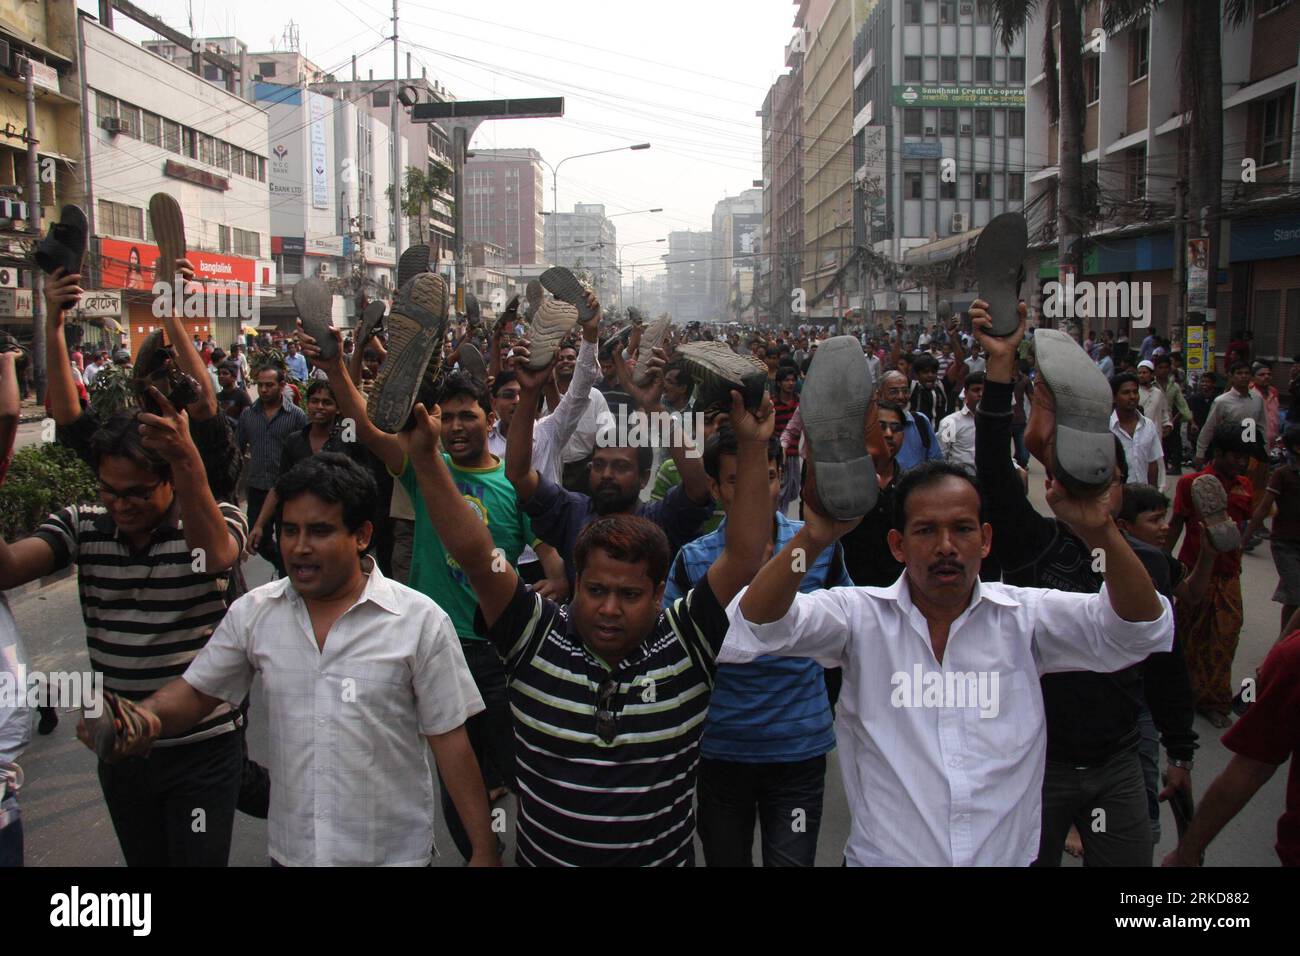 Bildnummer: 54885653 Datum: 07.02.2011 Copyright: imago/Xinhua (110207) -- DHAKA, 7. Februar 2011 (Xinhua) -- Angry Investors Demonstration vor dem Dhaka Stock Exchange Gebäude in Dhaka, Hauptstadt von Bangladesch am 7. Februar 2011. Der landesweite Generalstreik von morgens bis abends, der von der wichtigsten oppositionellen Partei Bangladeschs einberufen wurde, begann am Montagmorgen, während vereinzelte Zwischenfälle von Zusammenstößen zwischen den Streikenden und den Gesetzesvollziehern in der Hauptstadt Dhaka und anderswo stattfanden. (Xinhua/SharifulIslam) (cl) BANGLADESCH-STREIK PUBLICATIONxNOTxINxCHN Gesellschaft Protest Demo Streik Unruhe Ausschreitungen kbdig xdp Premiere Stockfoto